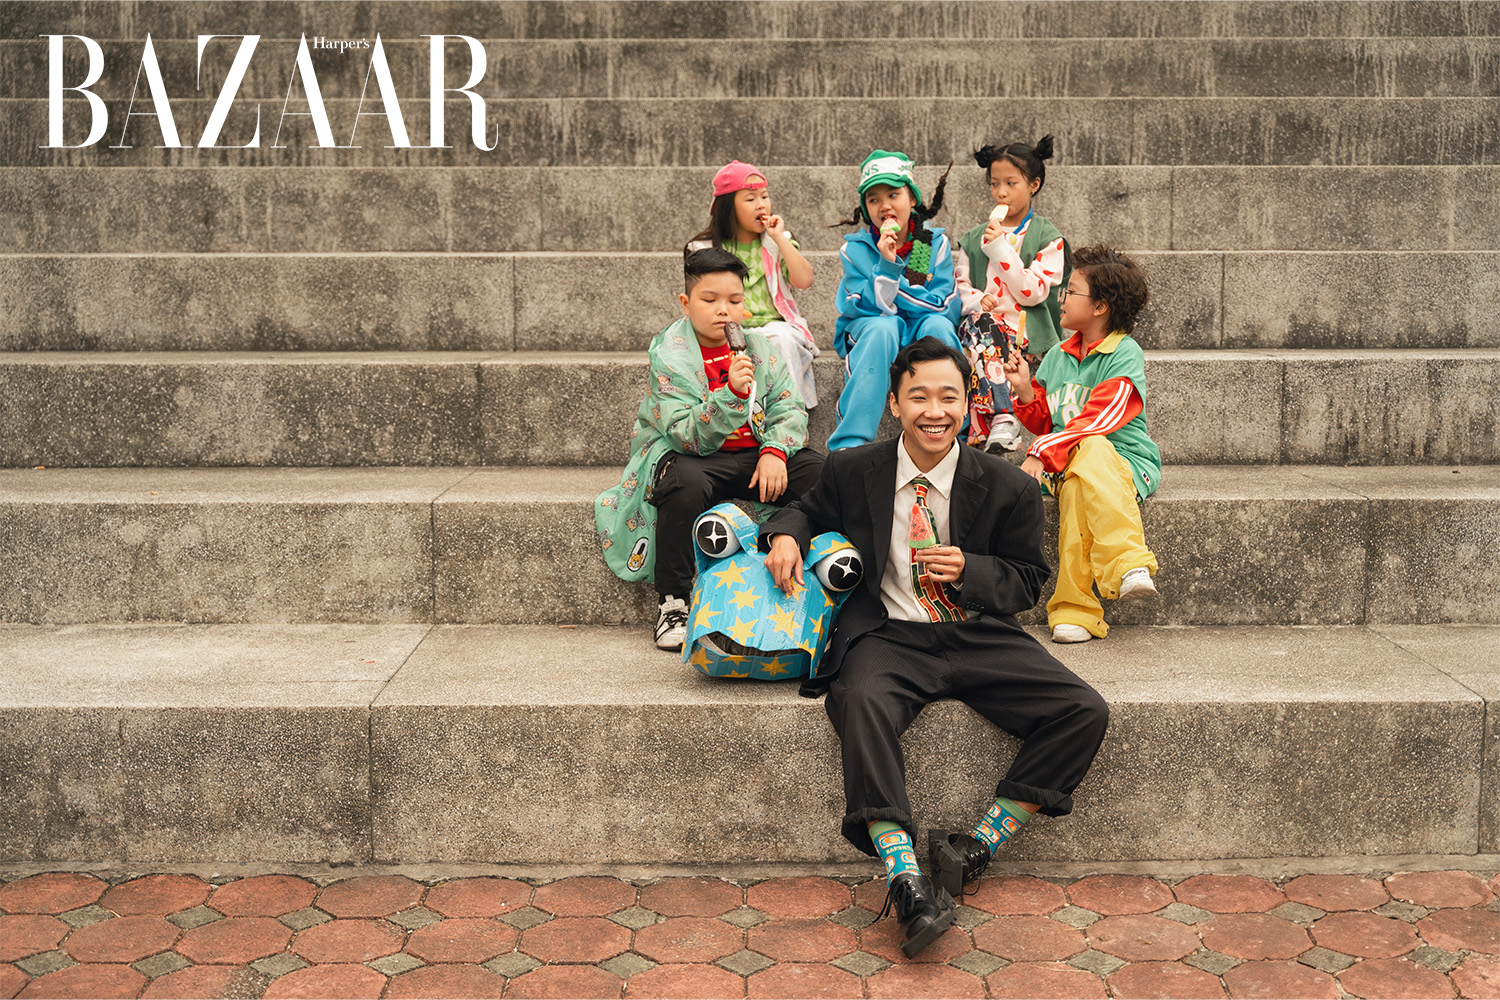 Harper's Bazaar_Madihu ra mắt MV Để Anh Không_04